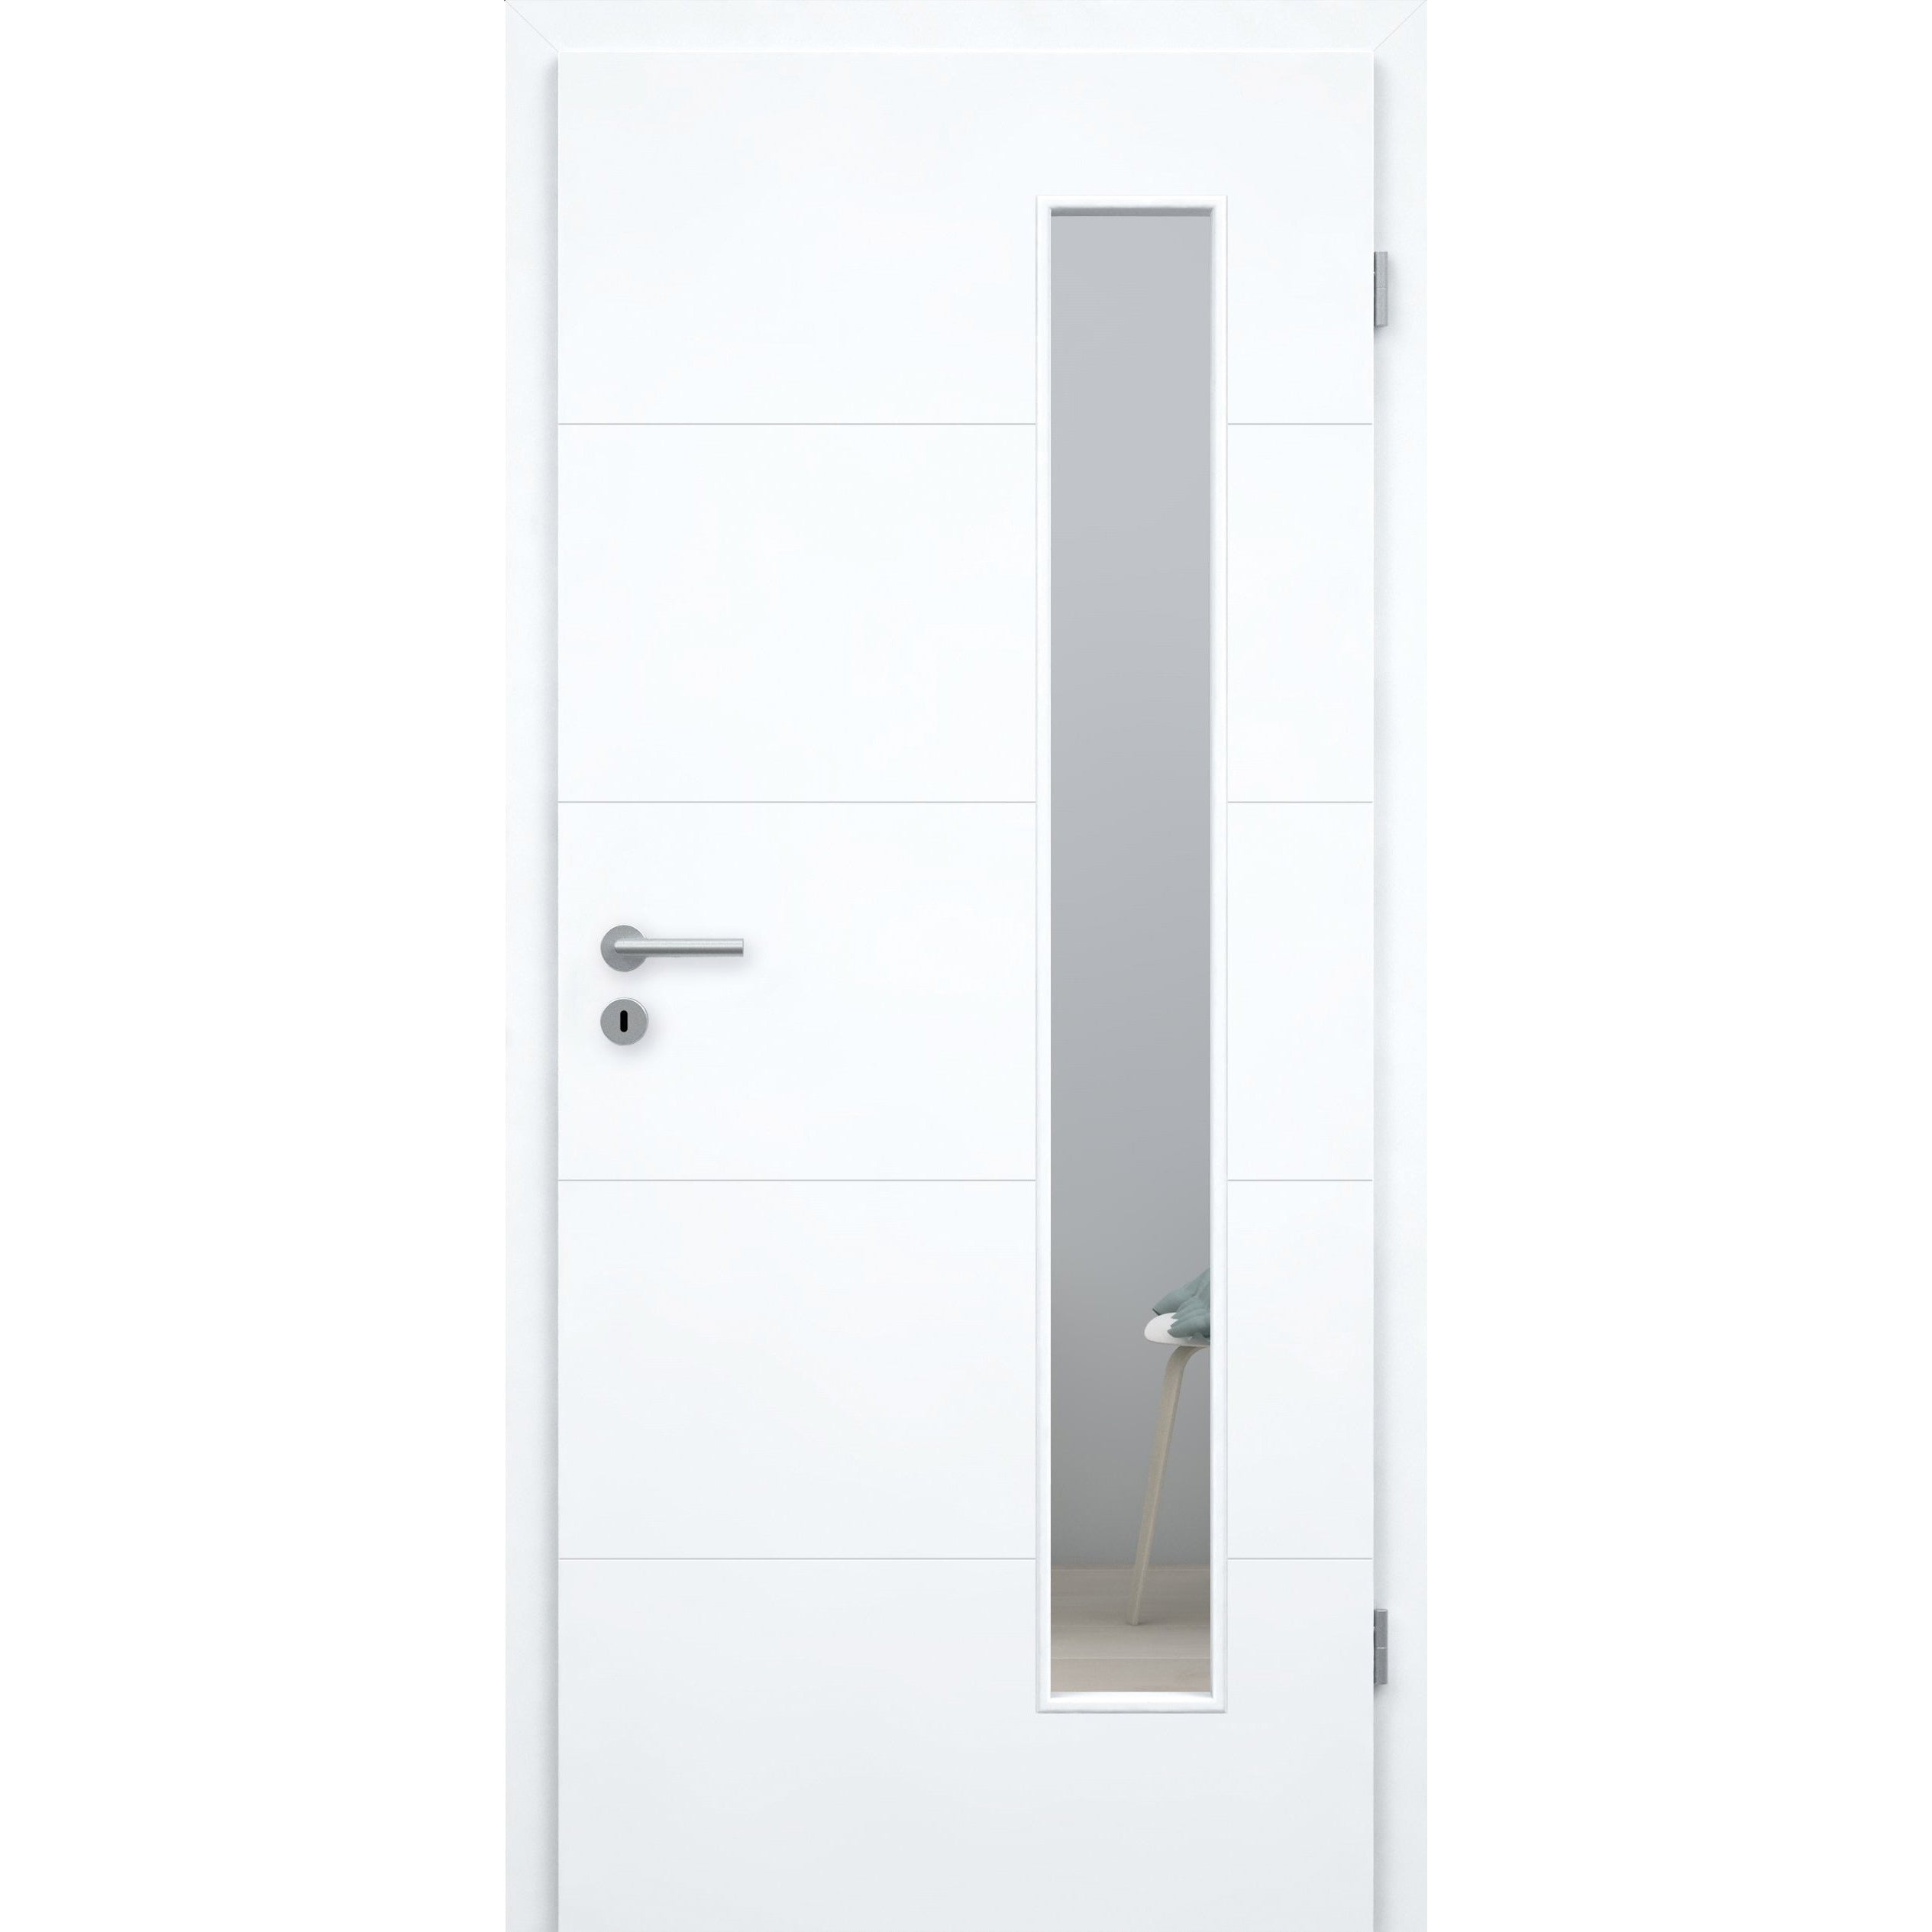 Zimmertür mit Zarge und Lichtausschnitt brillant-weiß 4 Rillen Designkante - Modell Designtür Q43LAB